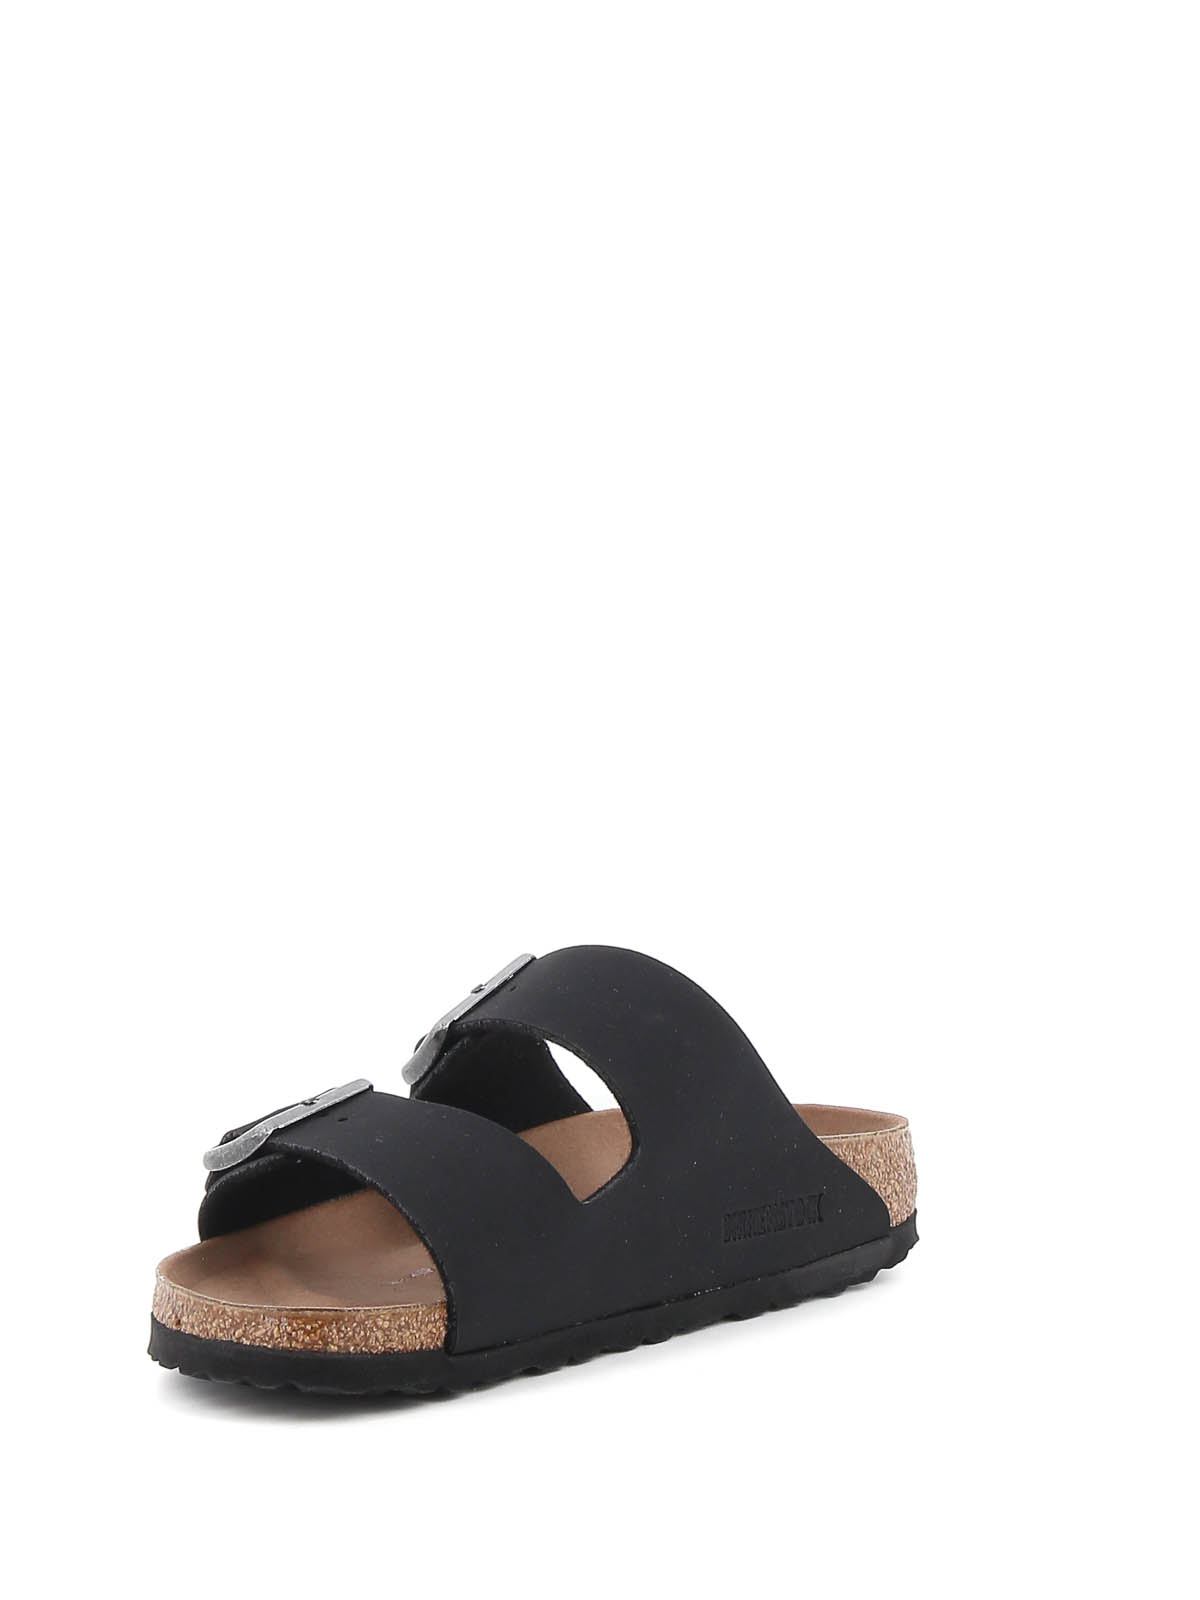 Shop Birkenstock Arizona Bs Sandals In Black